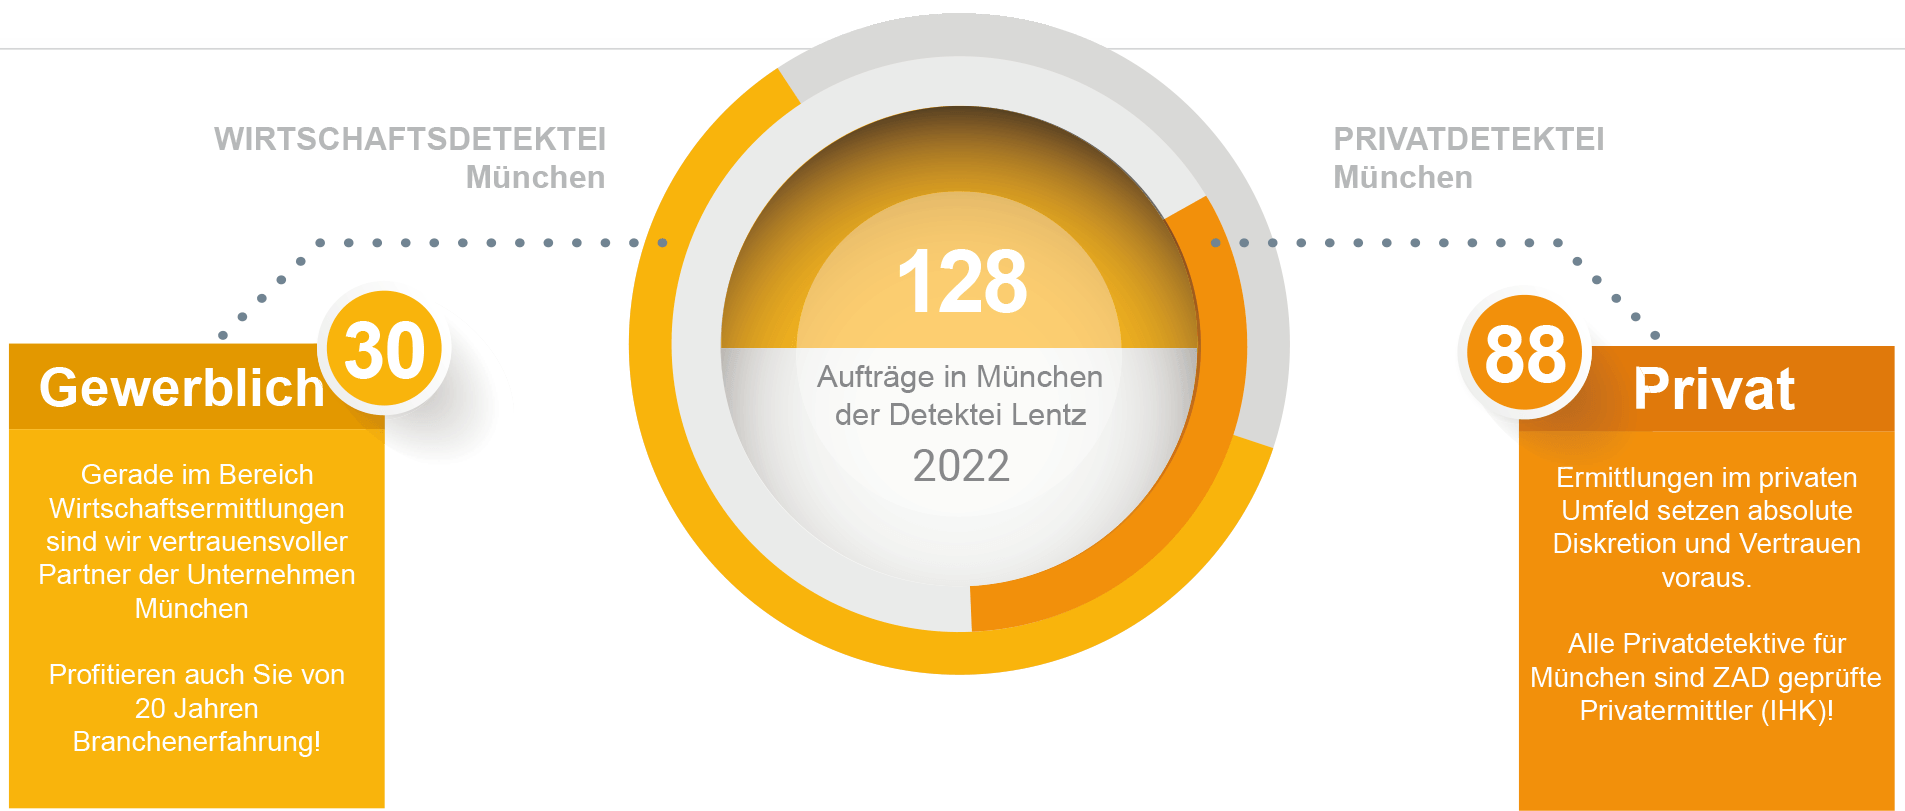 Aufträge für 2022 der Detektei München